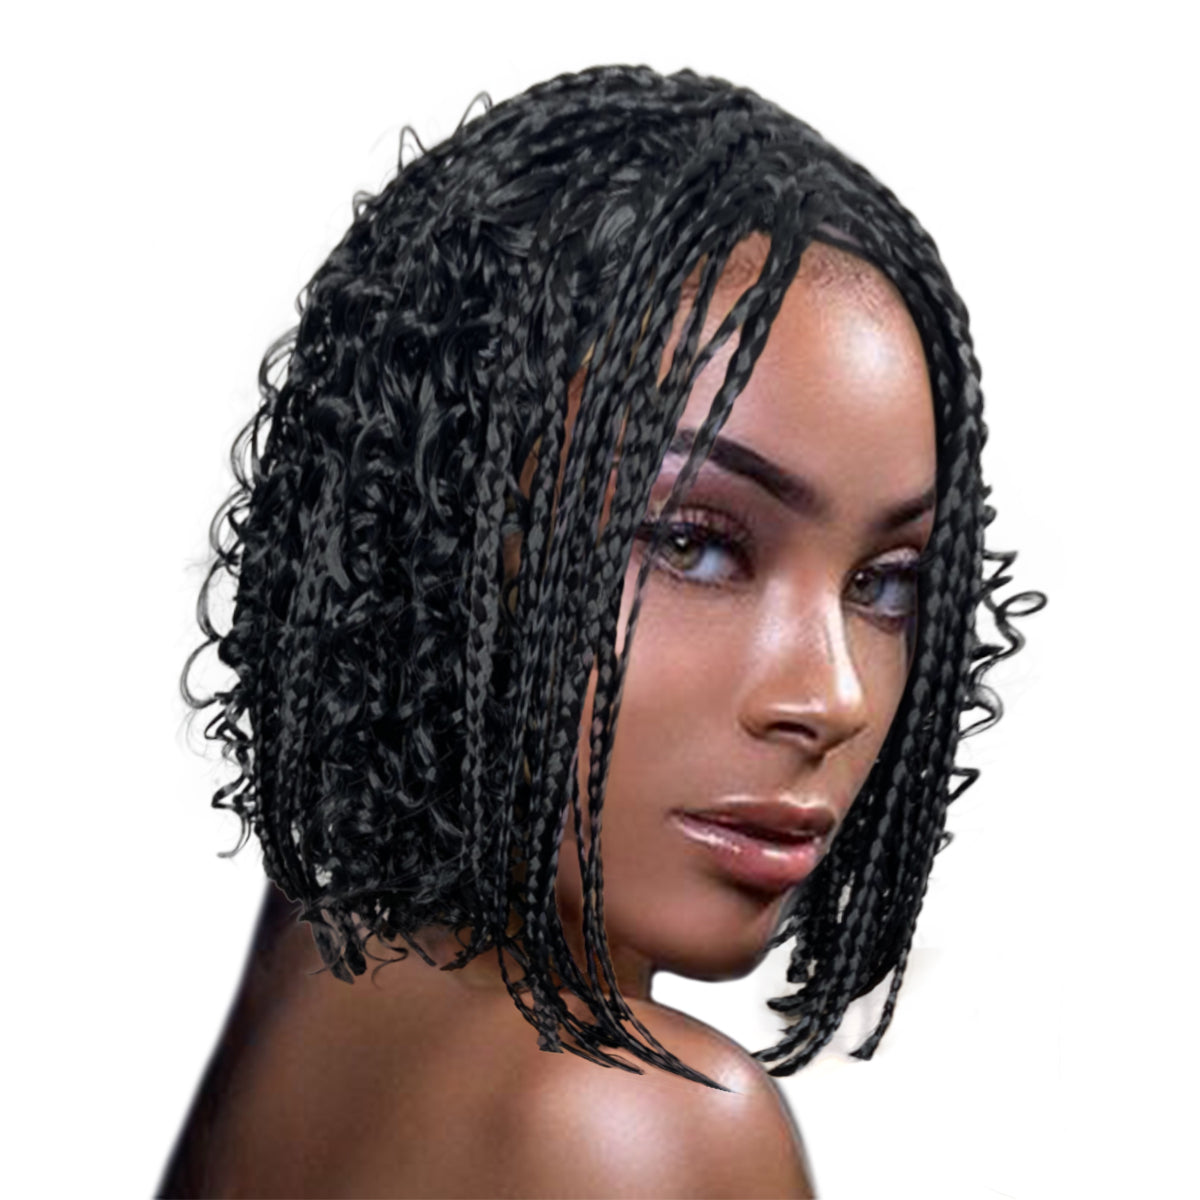 braided wigs (medium box Braids Wig) Braided Wig For Black Women